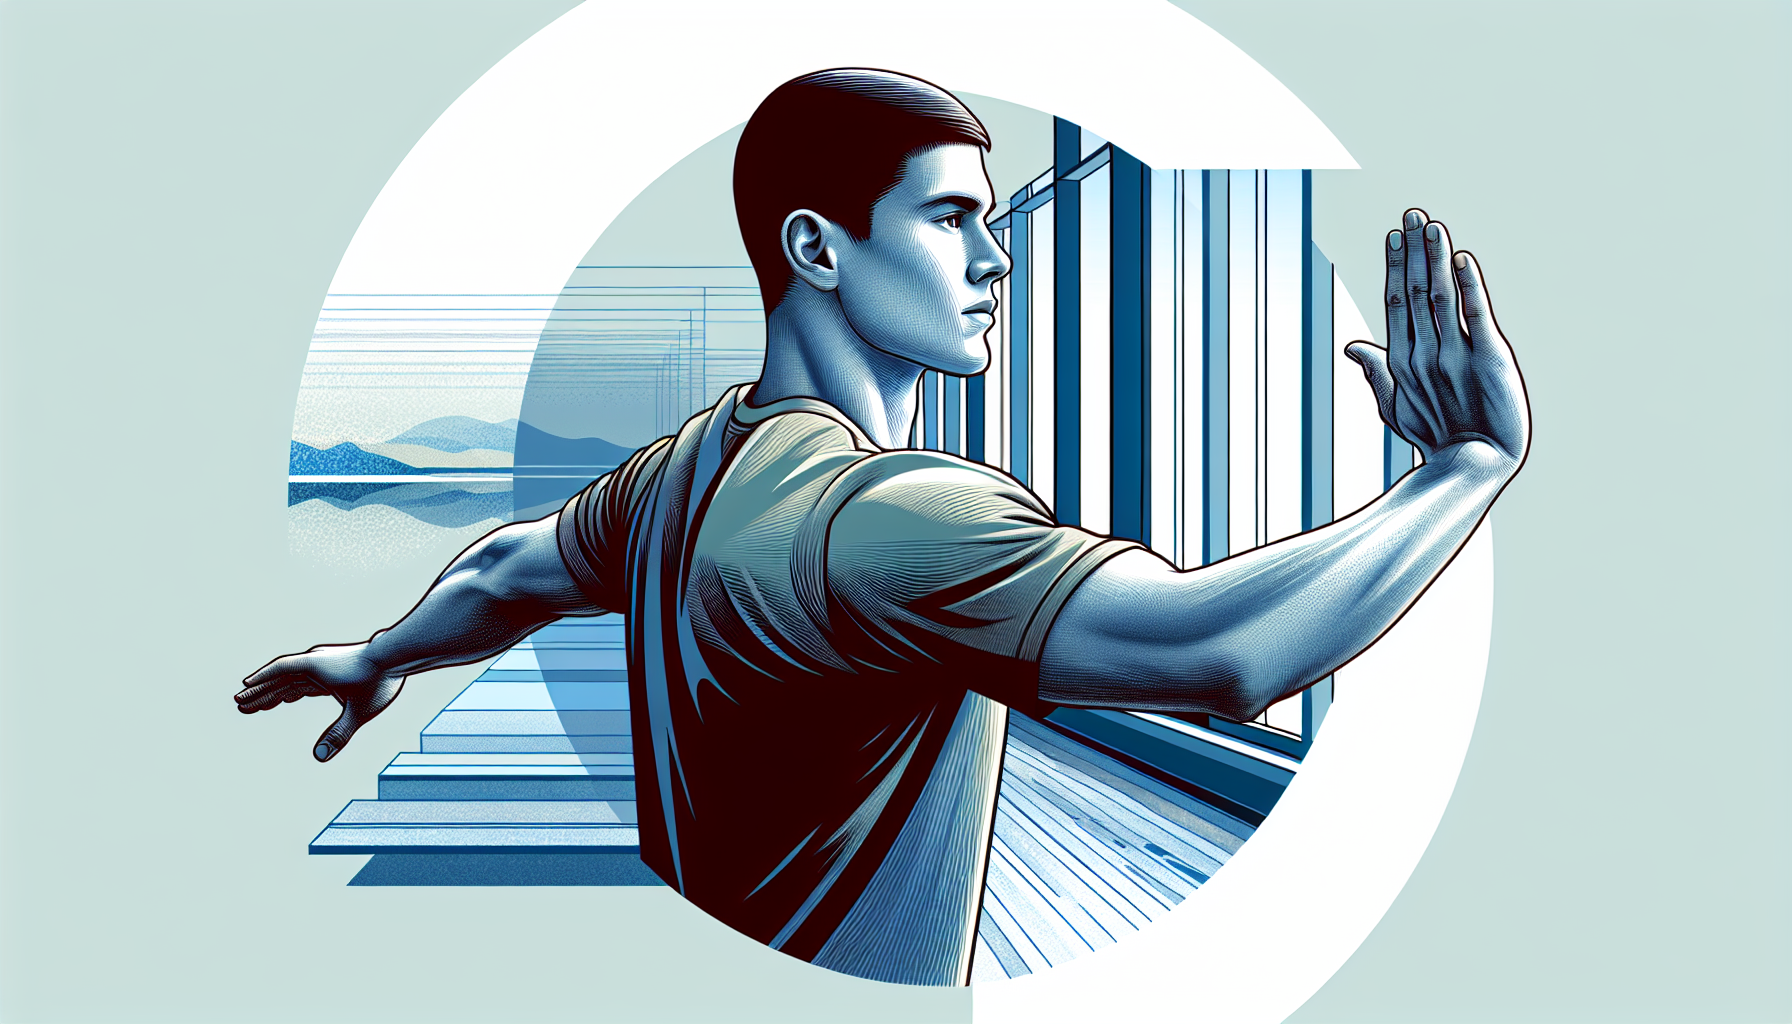 Illustration of arm slides exercise for improving shoulder mobility